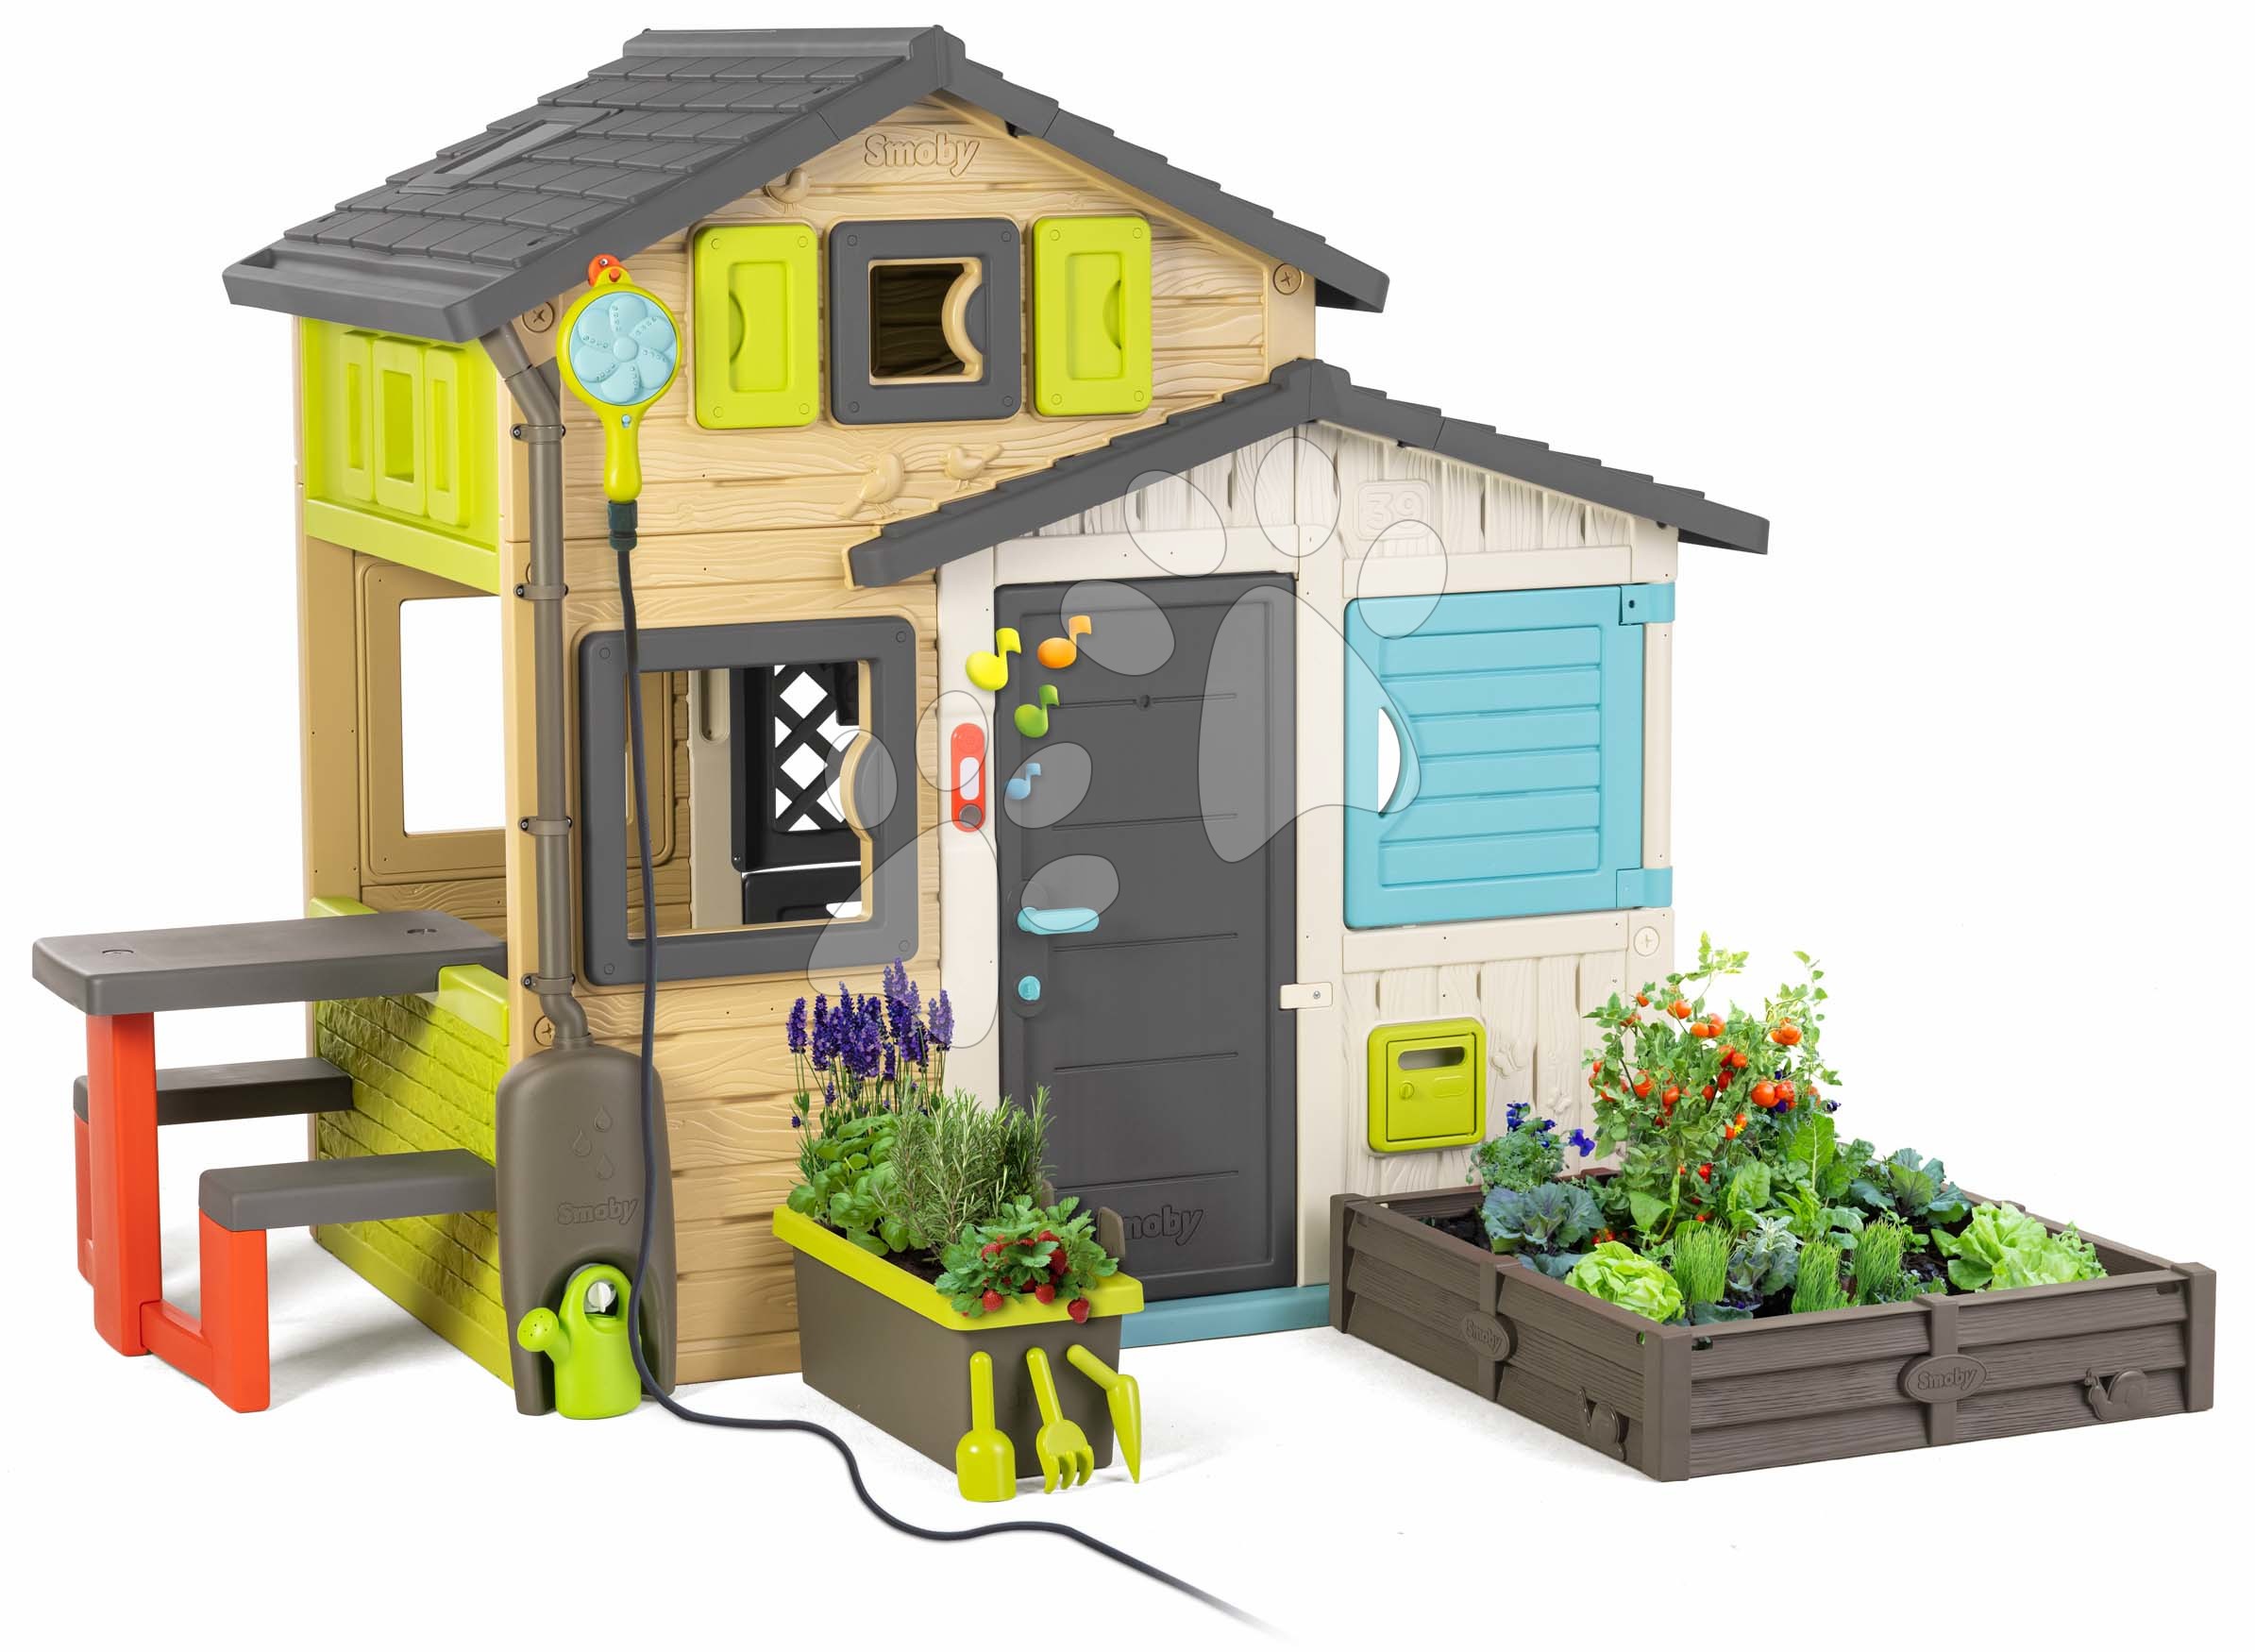 Speciálisan csak nálunk - Házikó Jóbarátok kerttel elegáns színekben Friends House Evo Playhouse Smoby bővíthető zuhanyfejjel